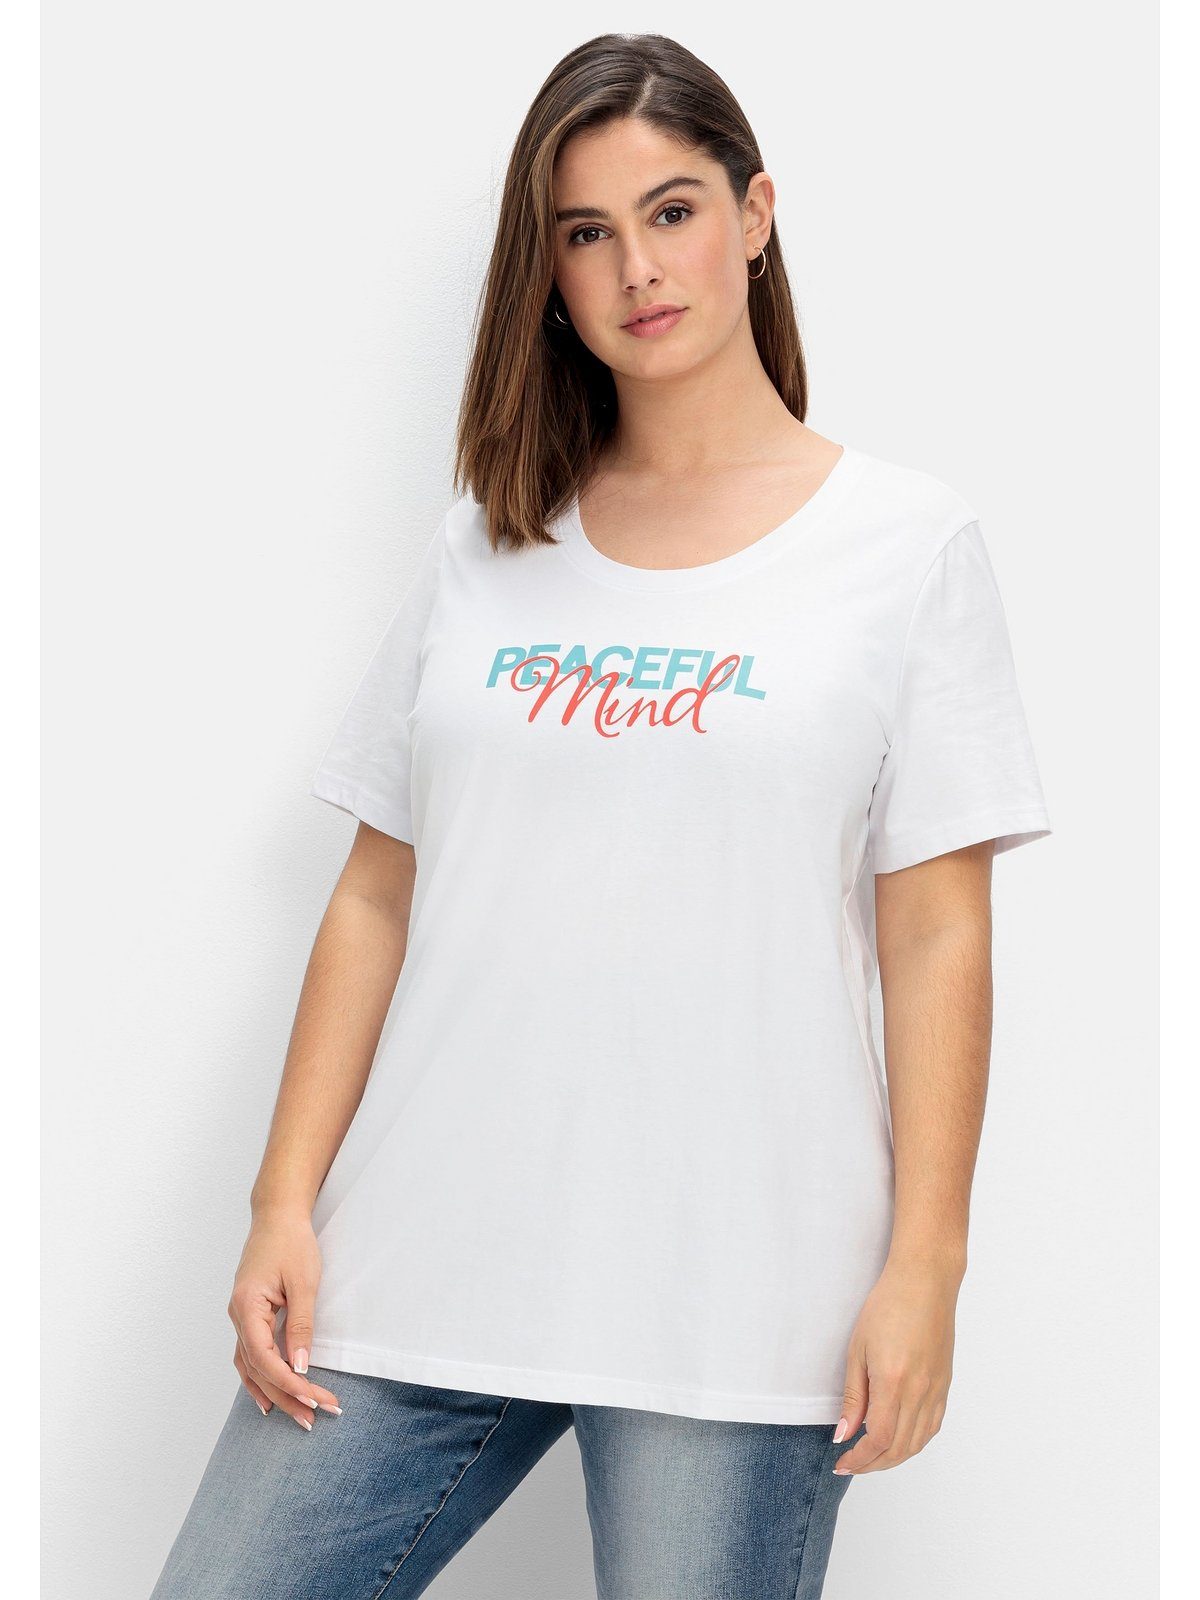 Sheego T-Shirt Große Größen mit Statement-Frontdruck weiß bedruckt